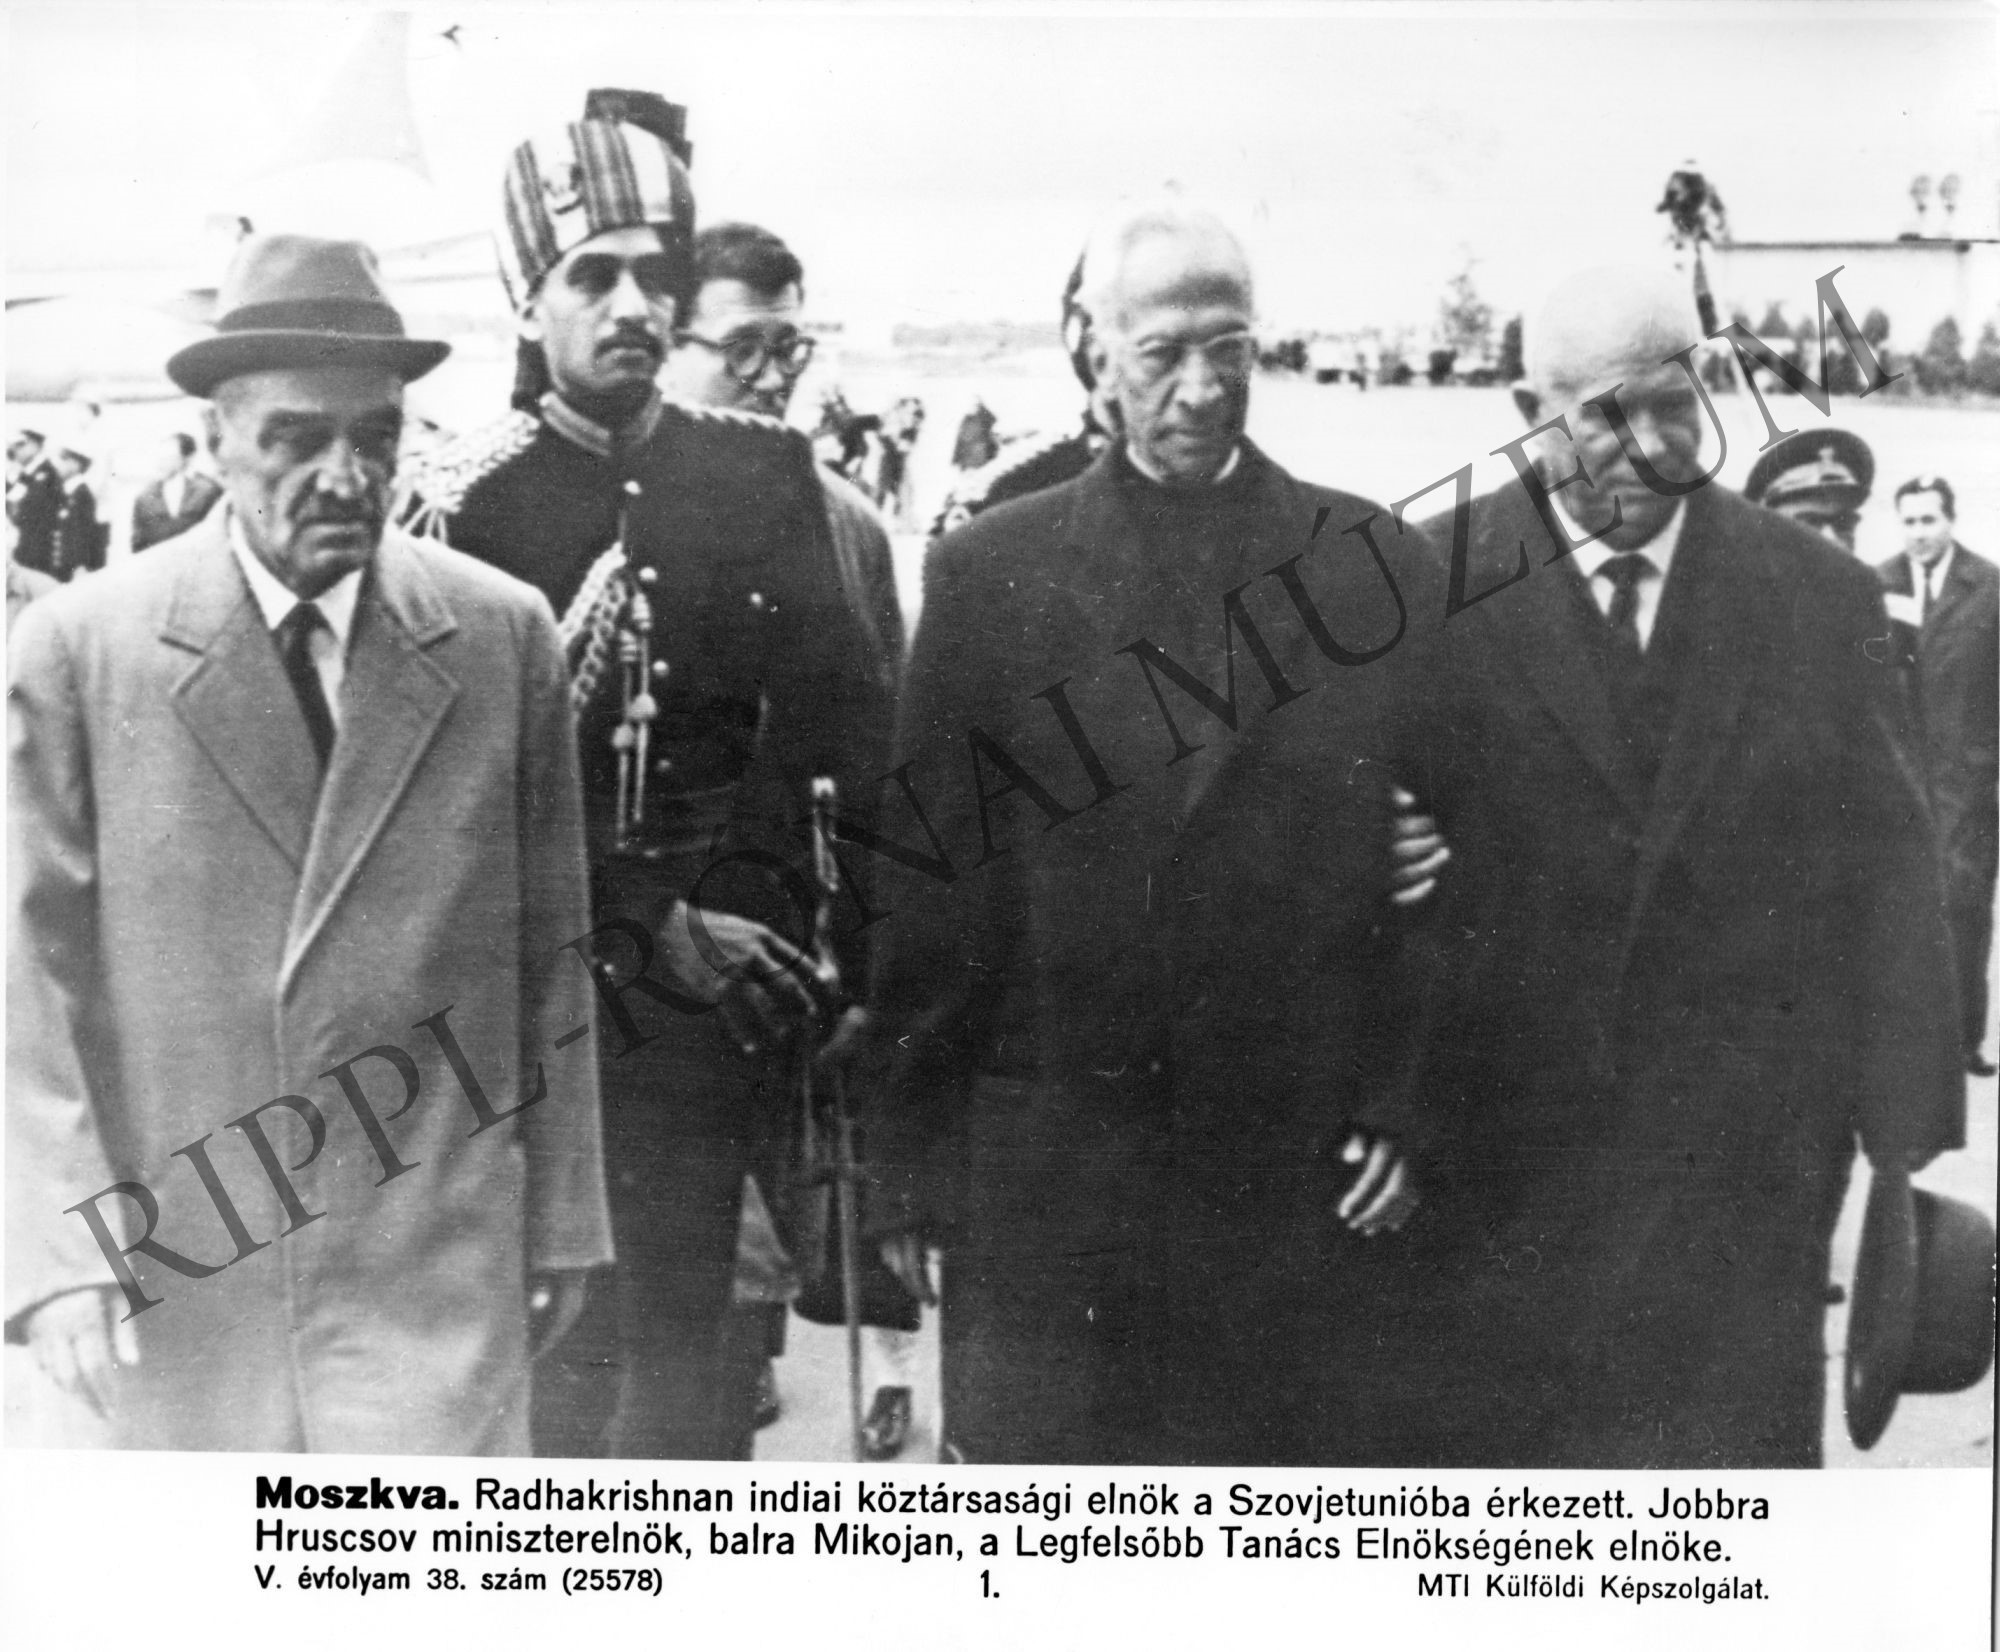 A Szovjetunióba érkezett Radhakrishnan indiai köztársasági elnök. Jobbra Hruscsov szovjet miniszterelnök, balra Mikojan, a Legfelsőbb Tanács Elnökségének elnöke (Rippl-Rónai Múzeum CC BY-NC-SA)